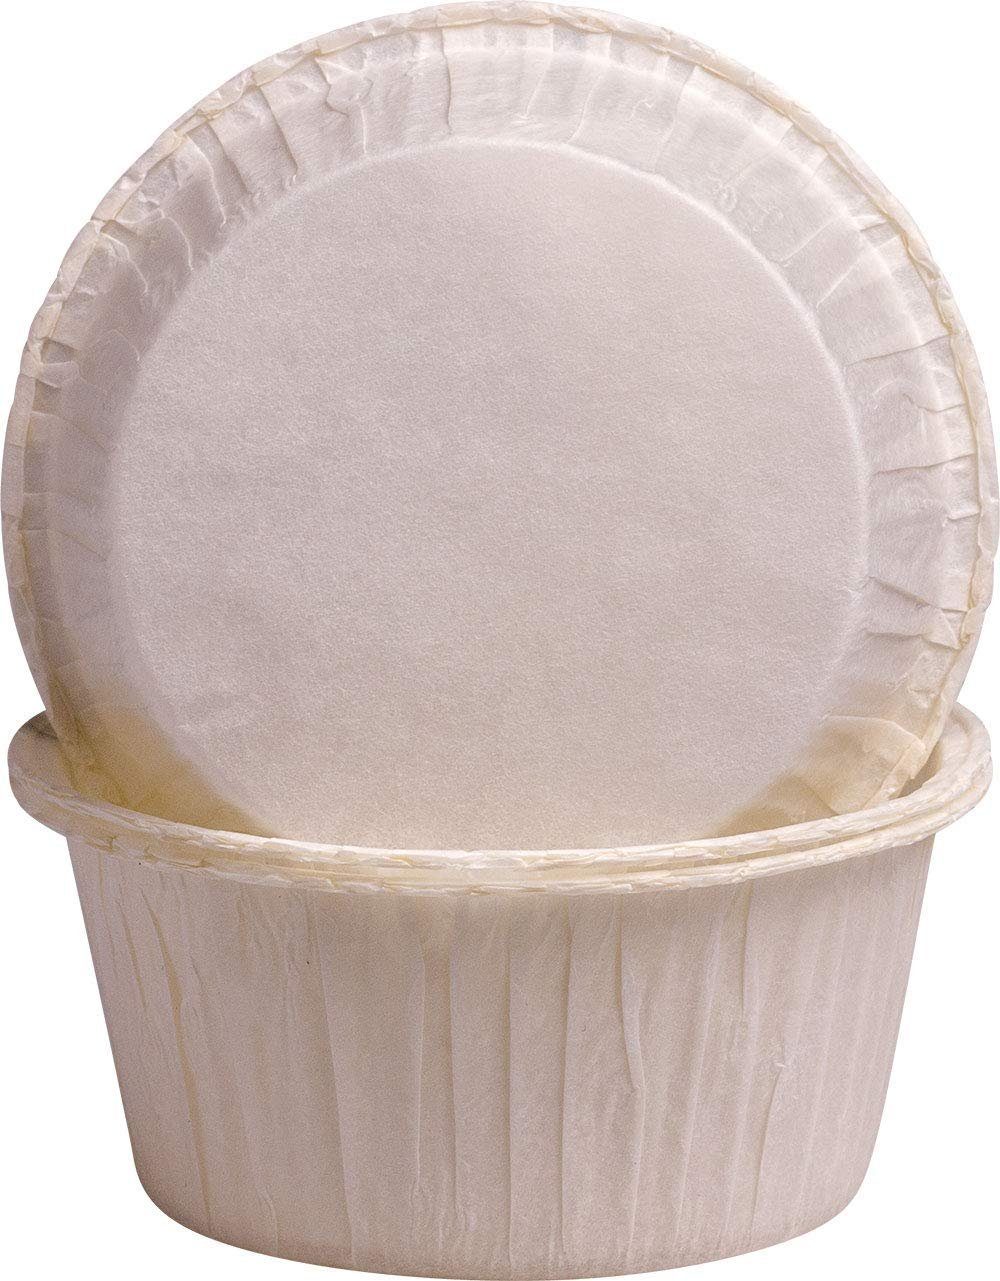 Demmler Muffinform 5032800250, 250 Backförmchen in weiß, zum backen von Cupcakes, Muffins und mehr - Made in Germany